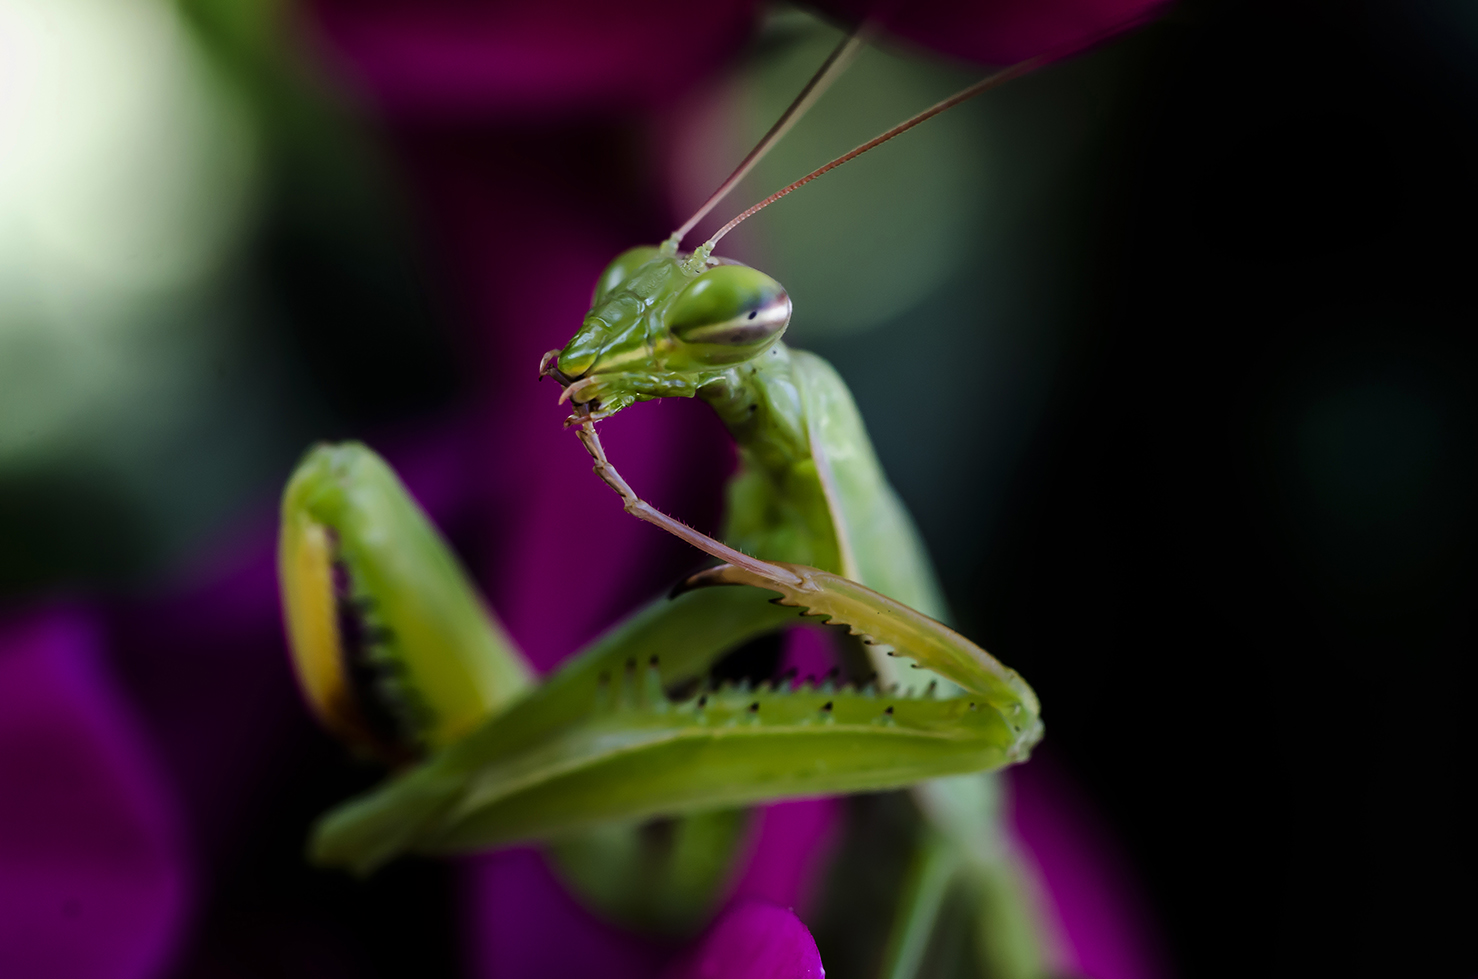 Mantis close-up...